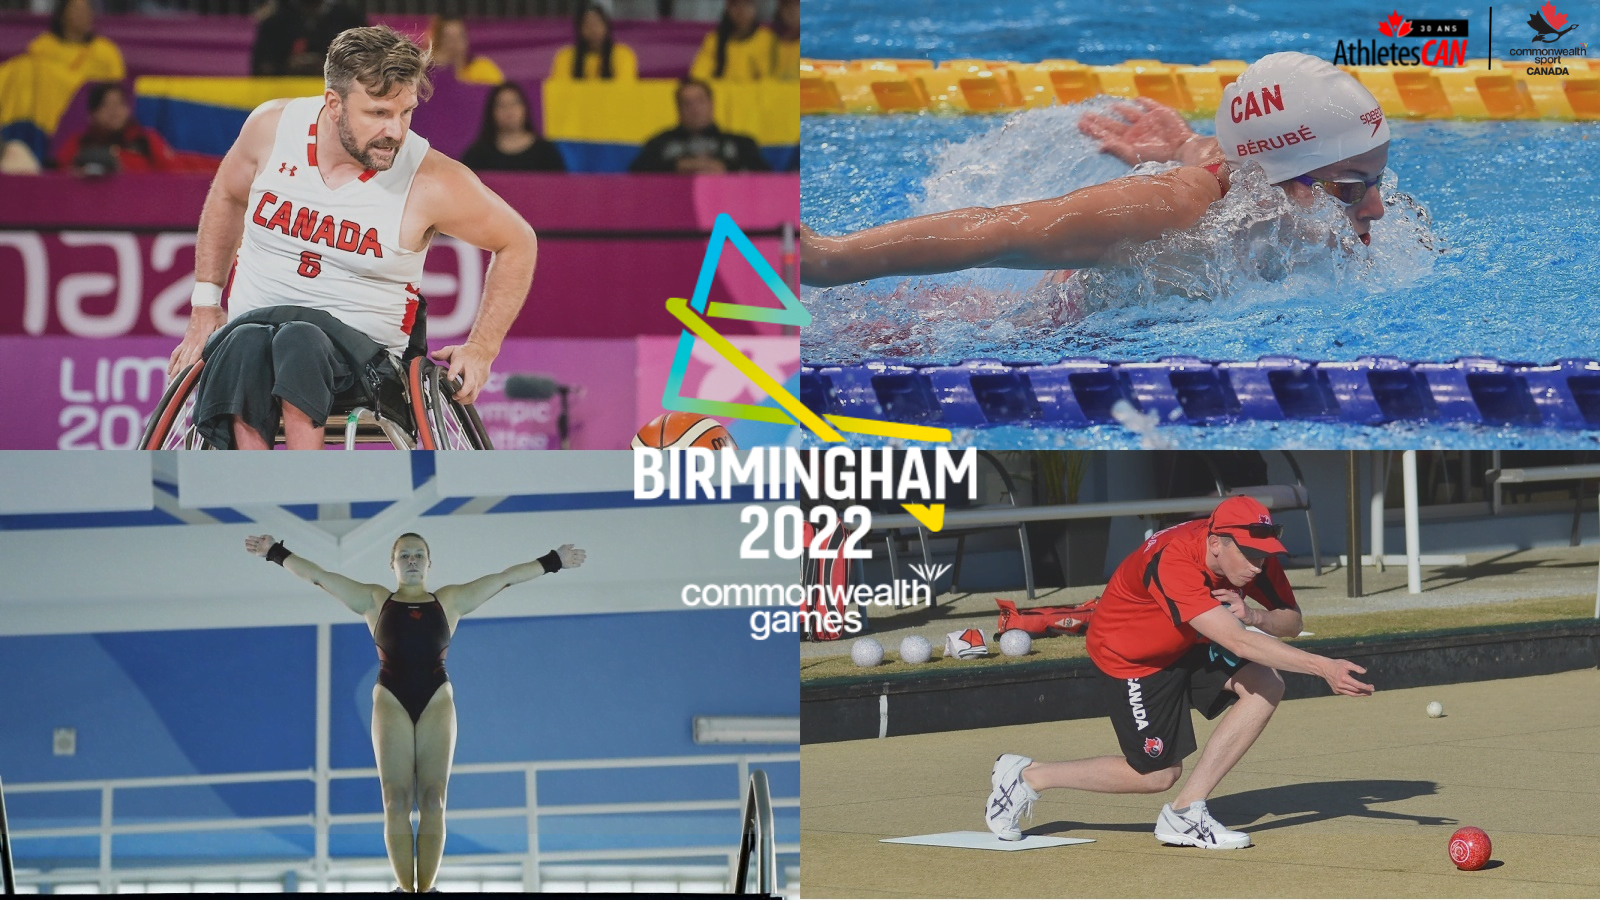 AthlètesCAN est fière des membres de son conseil d’administration qui participent aux Jeux du Commonwealth de Birmingham 2022 après avoir célébré son 30e anniversaire